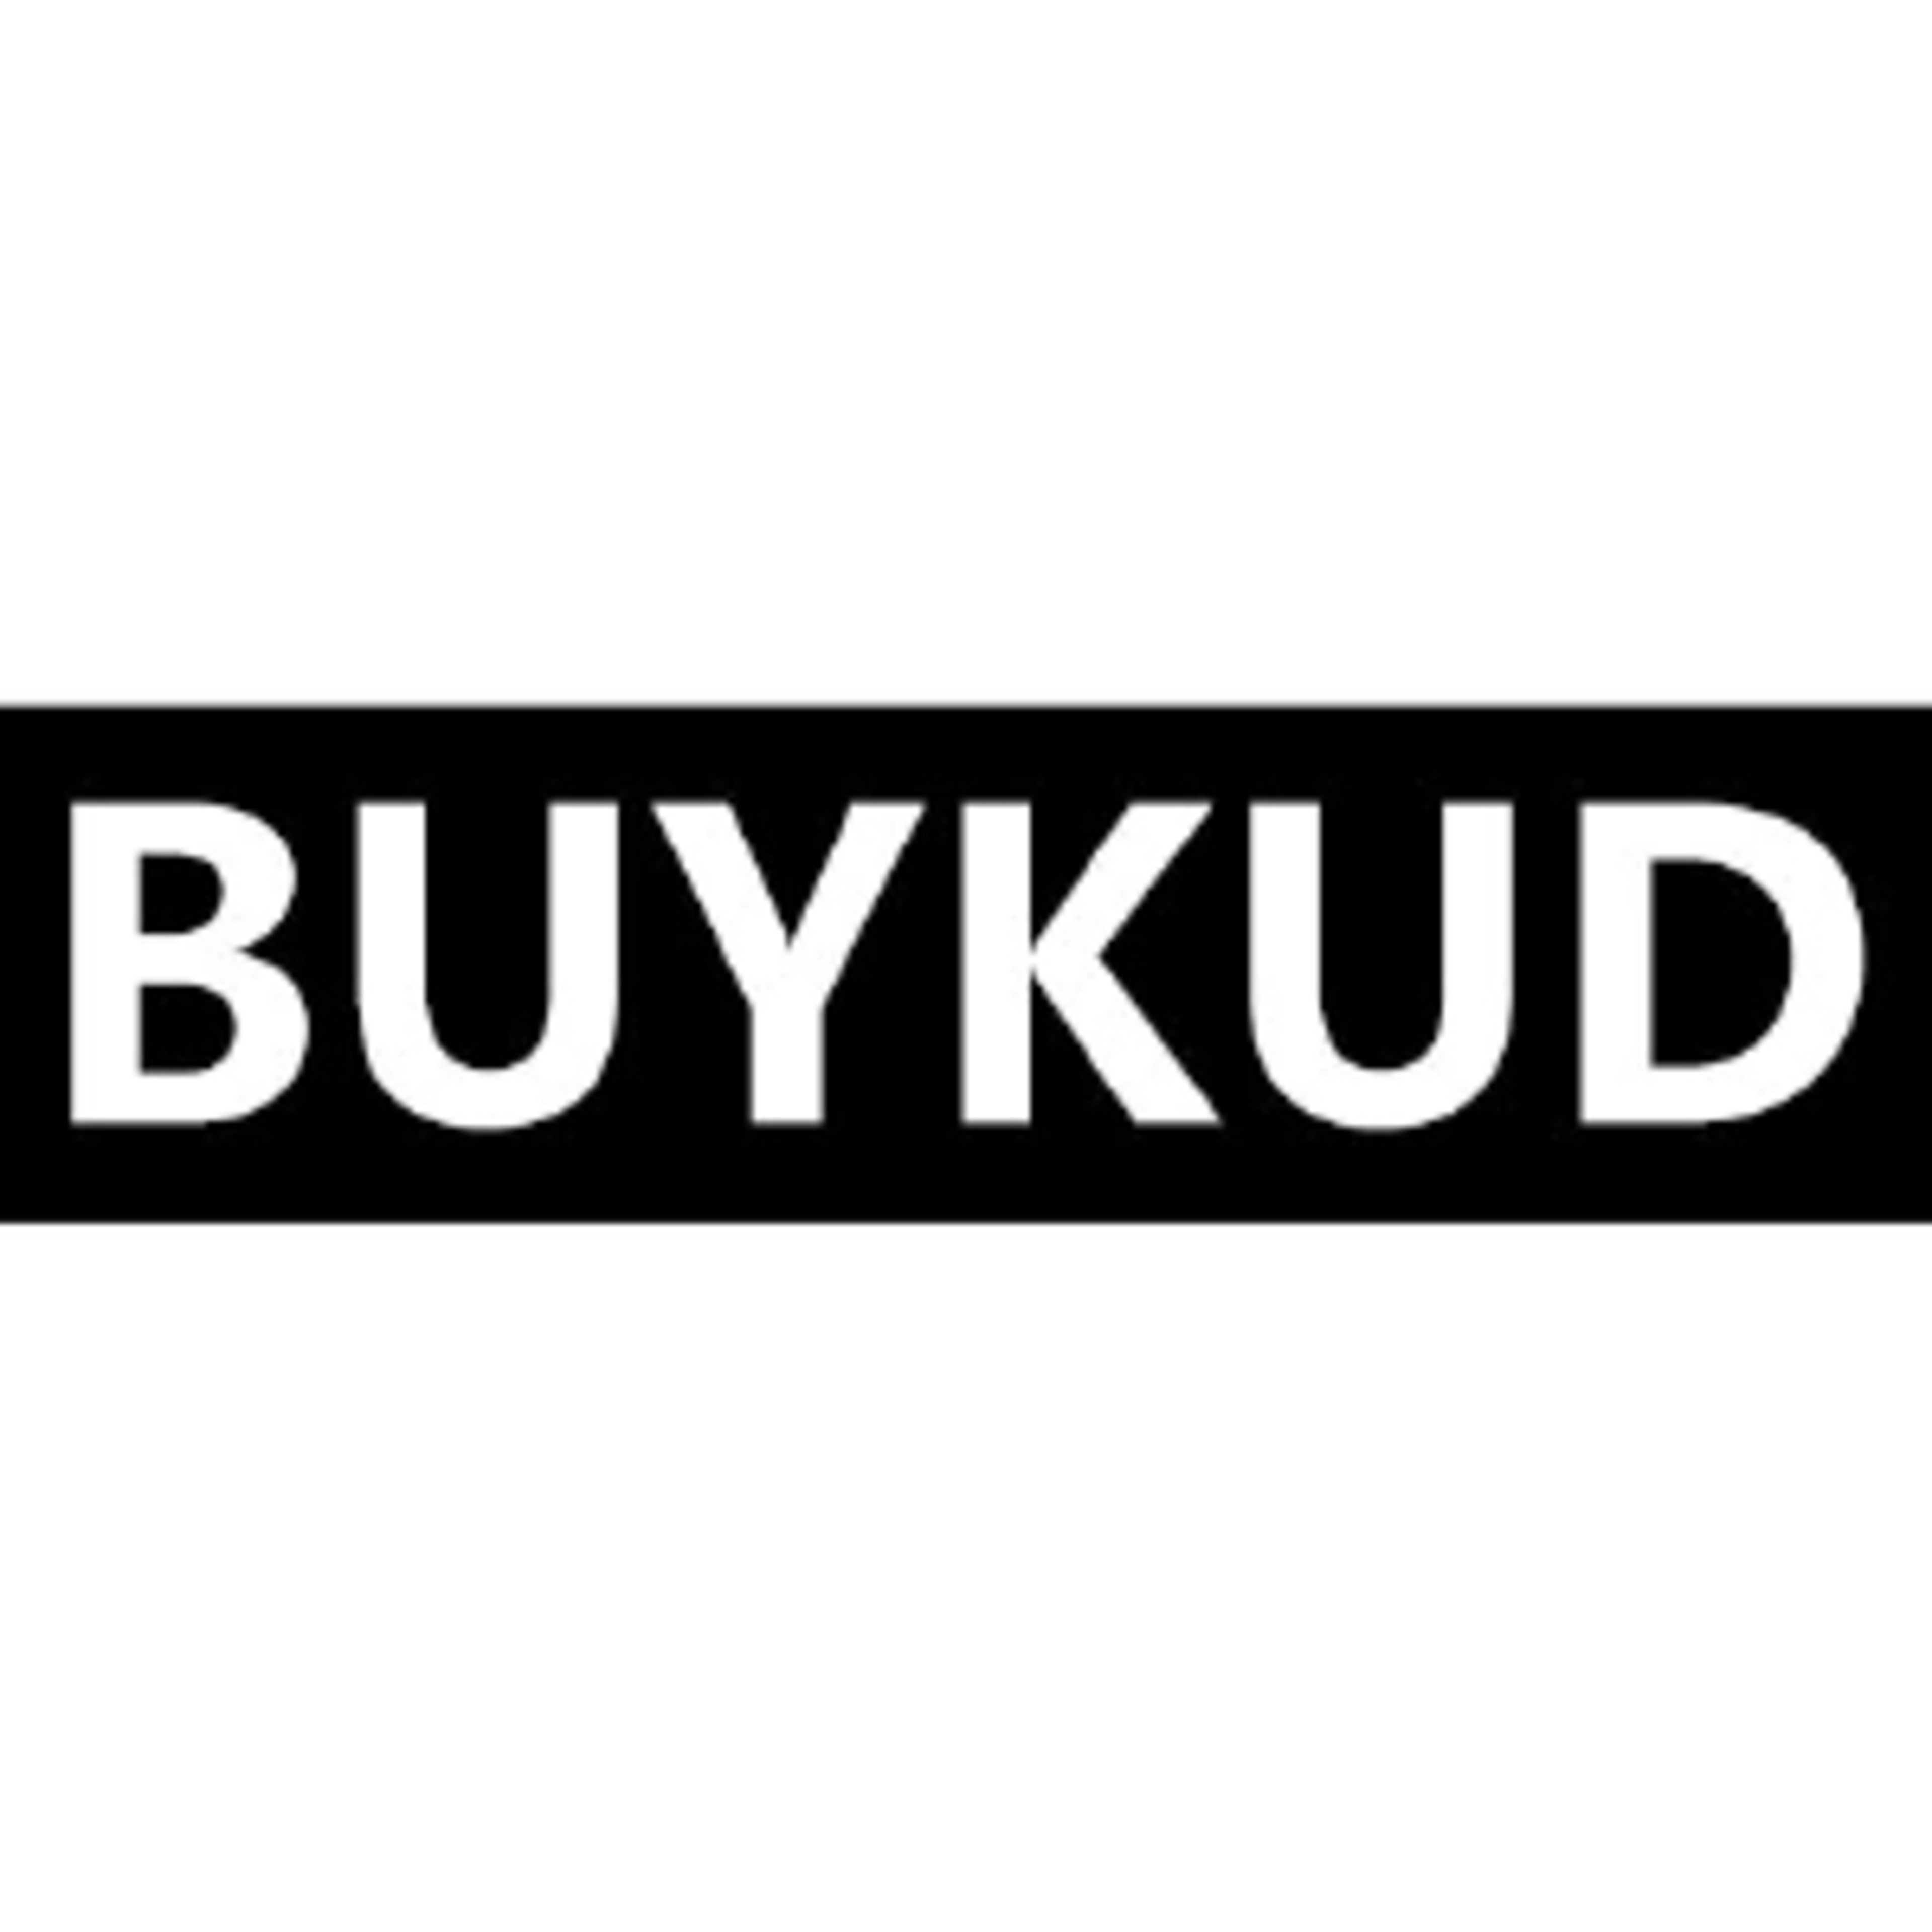 BuykudCode